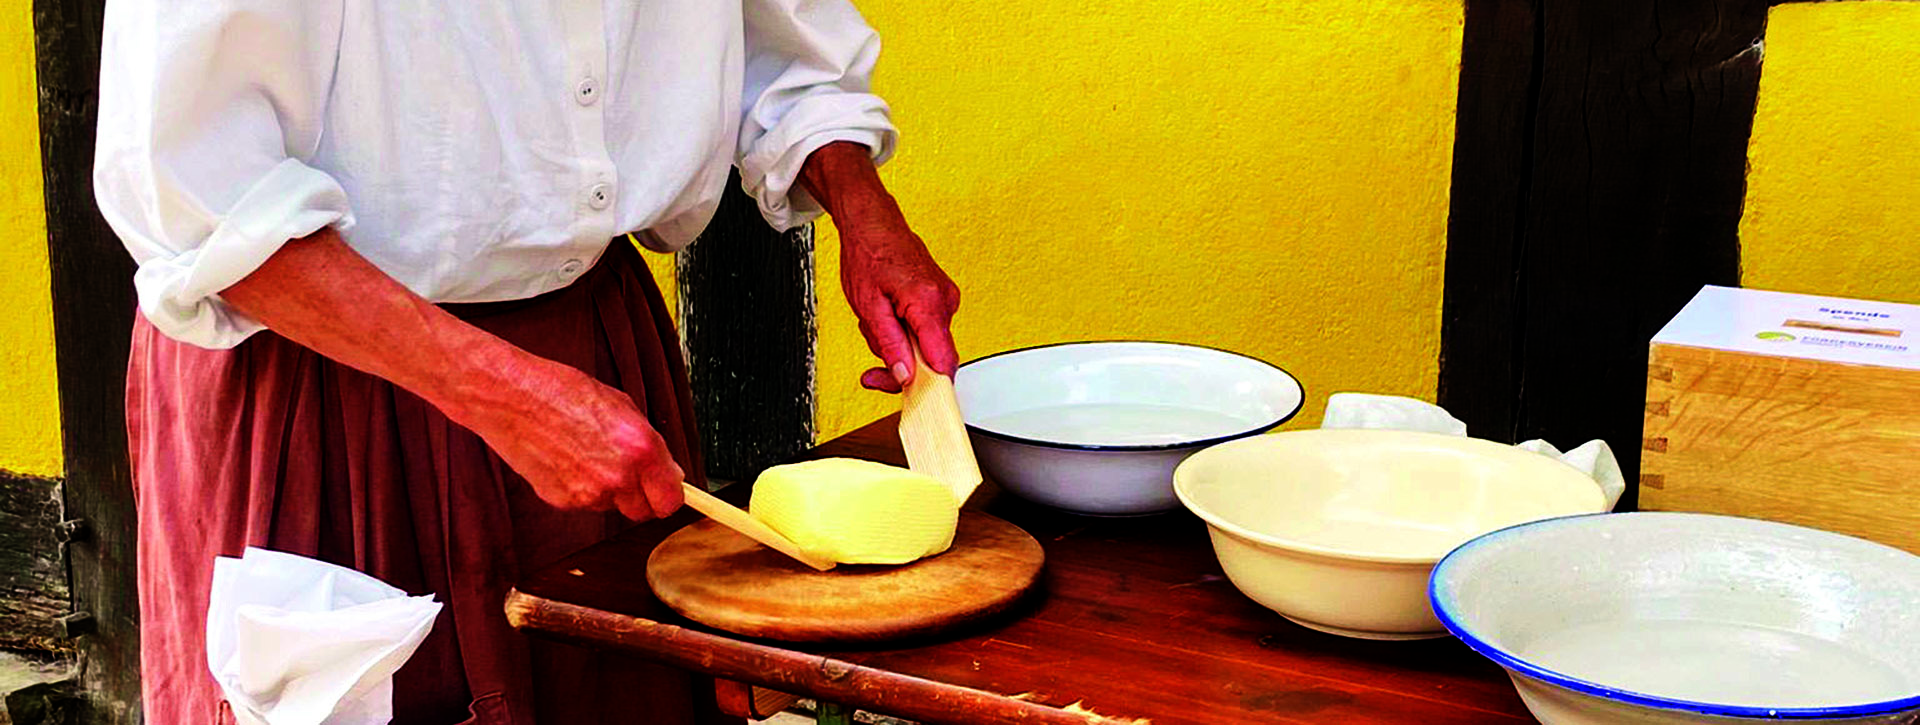 Frau in weißer Bluse und weißem Kopftuch bearbeitet Butter